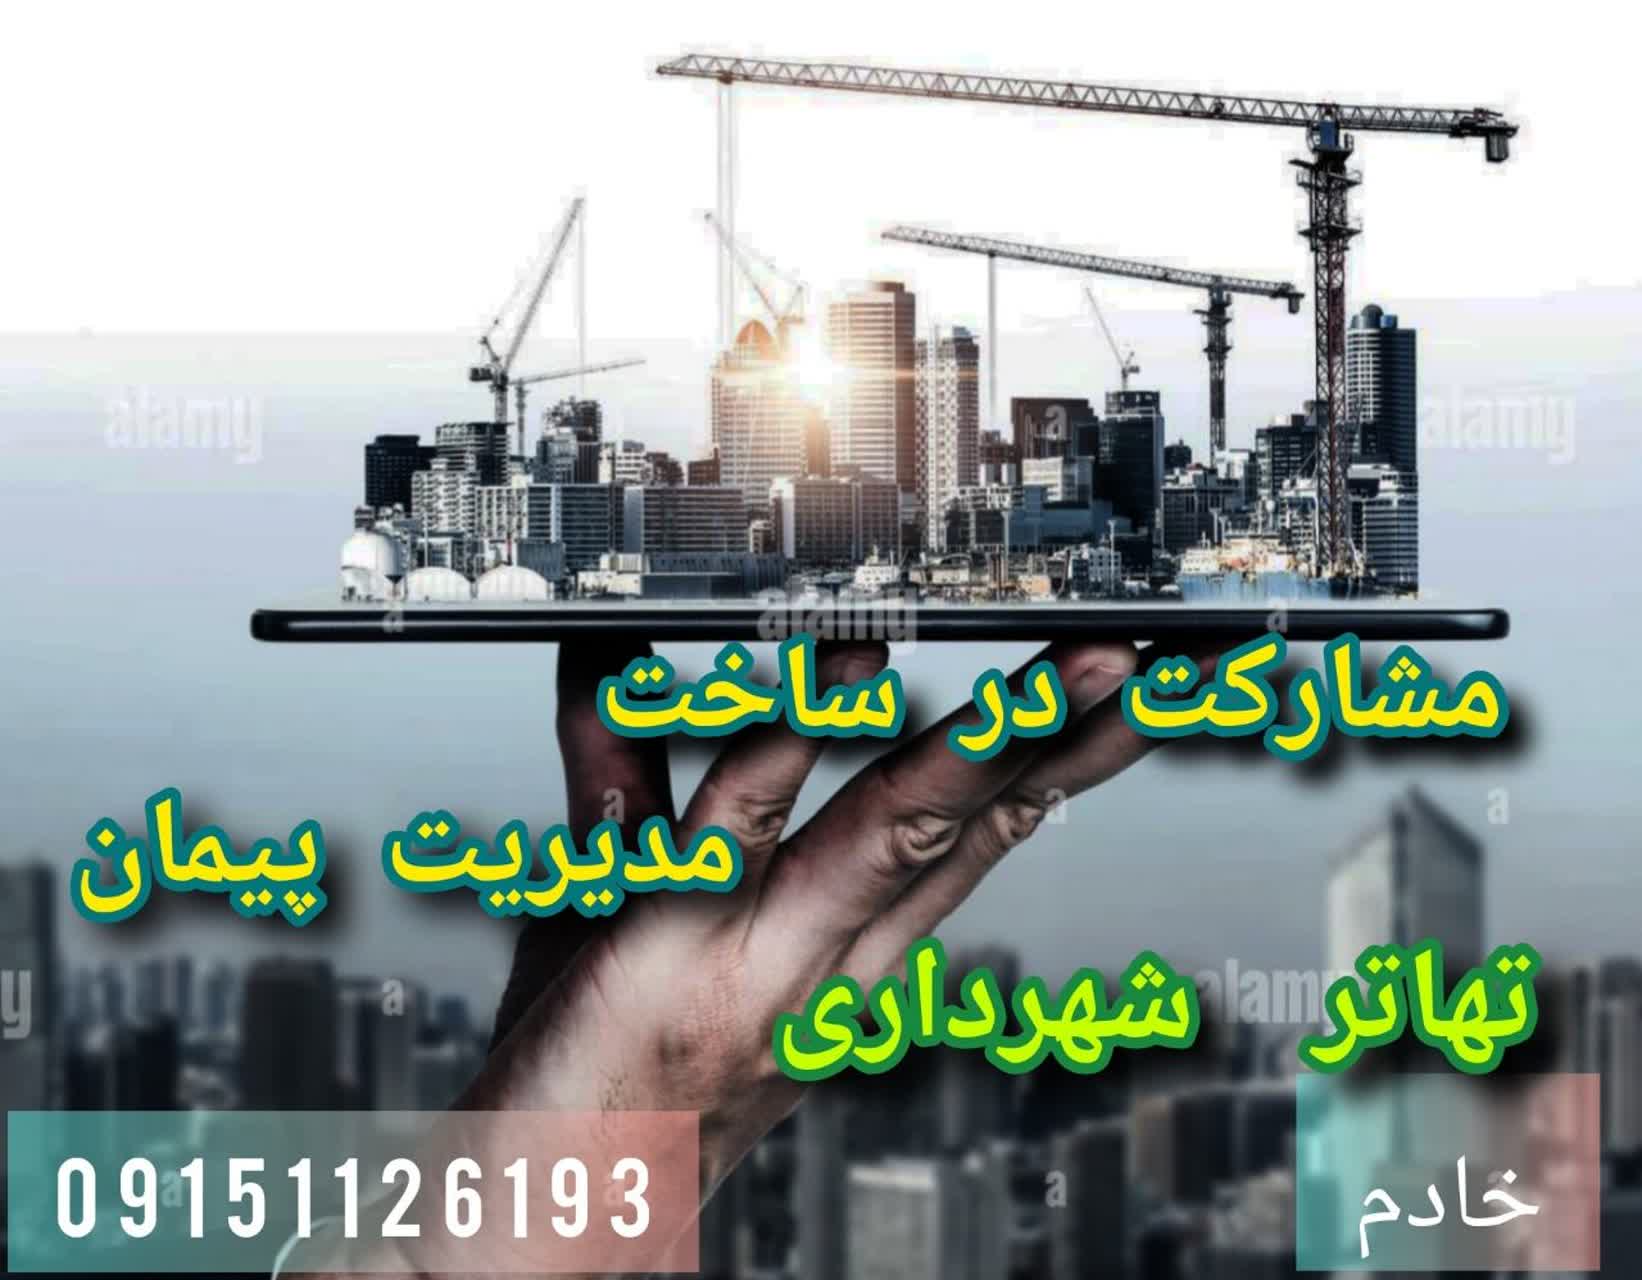 مشارکت در ساخت در همه مناطق مشهد